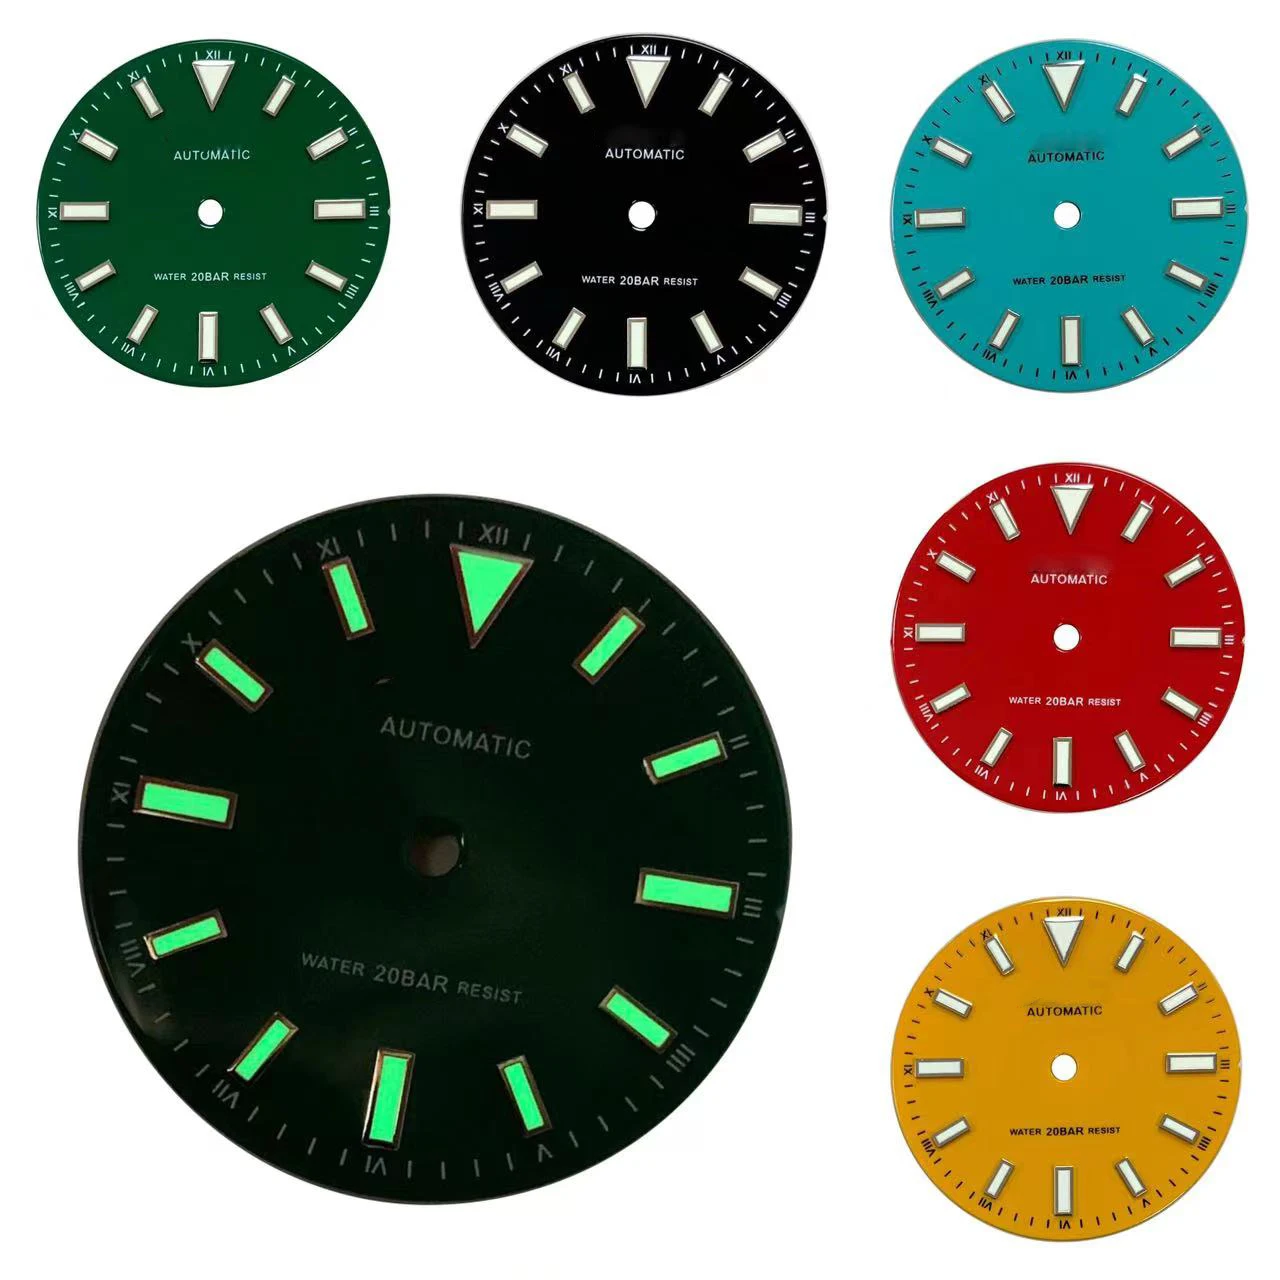 

Аксессуары для часов с гладким циферблатом 28,5 мм, модифицированным японским NH35 и NH36 автоматическим движением, излучающим зеленый цвет